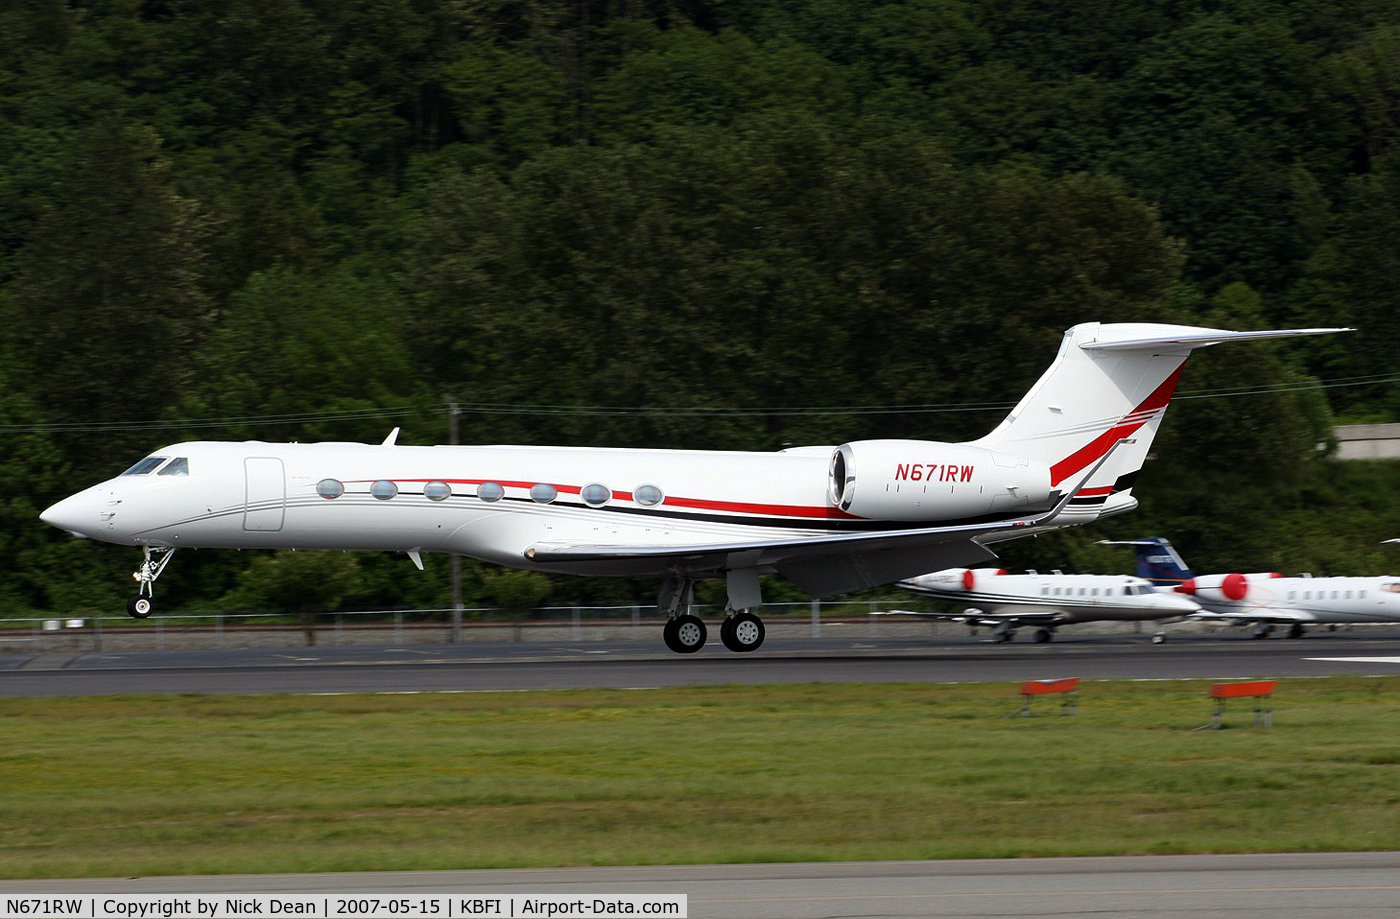 N671RW, 2006 Gulfstream Aerospace GV-SP (G550) C/N 5131, KBFI